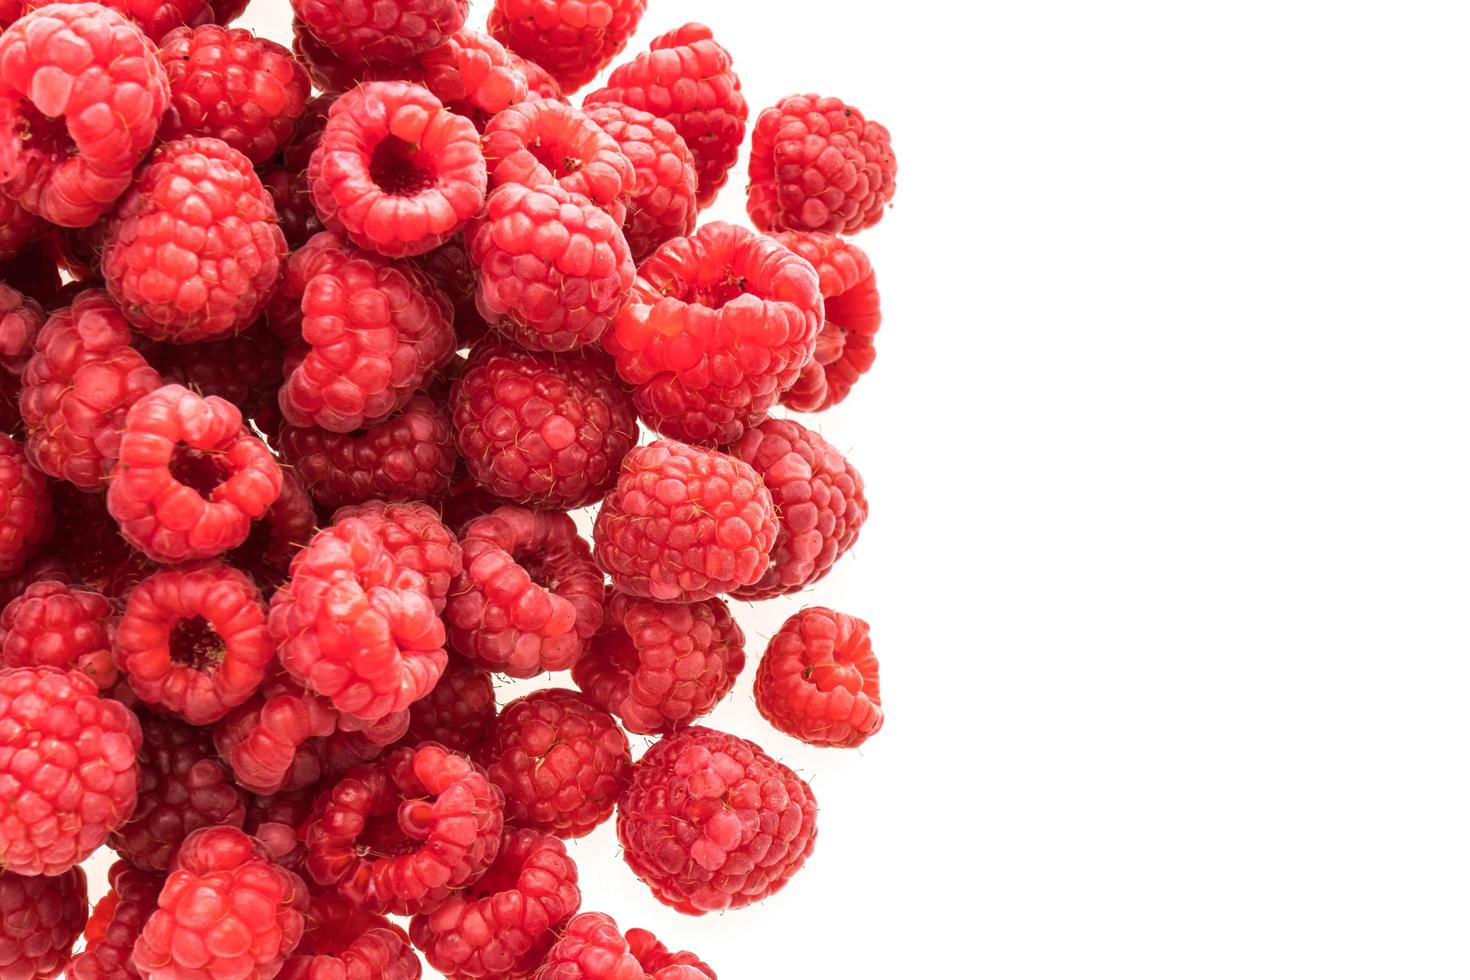 Rasberry fruit on white photo